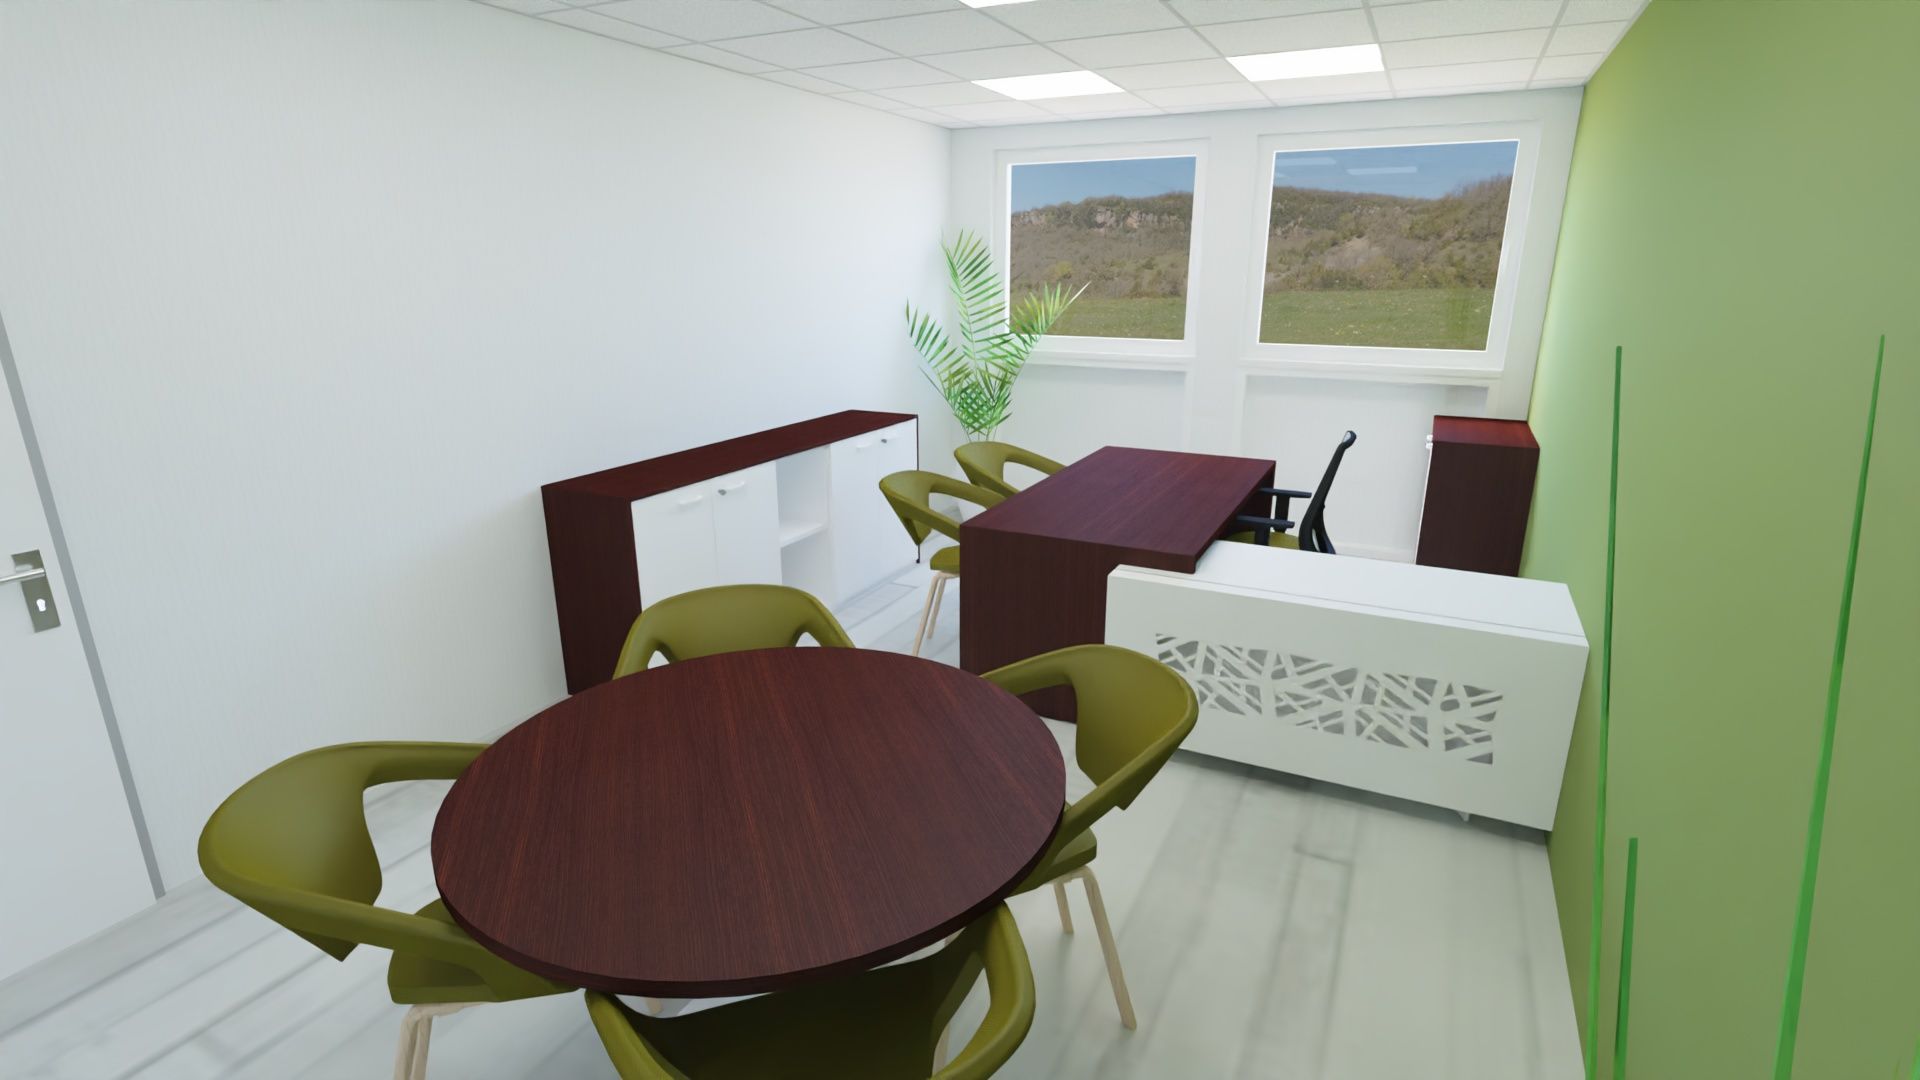 Bureau avec table ronde et bureau et des murs vert clair